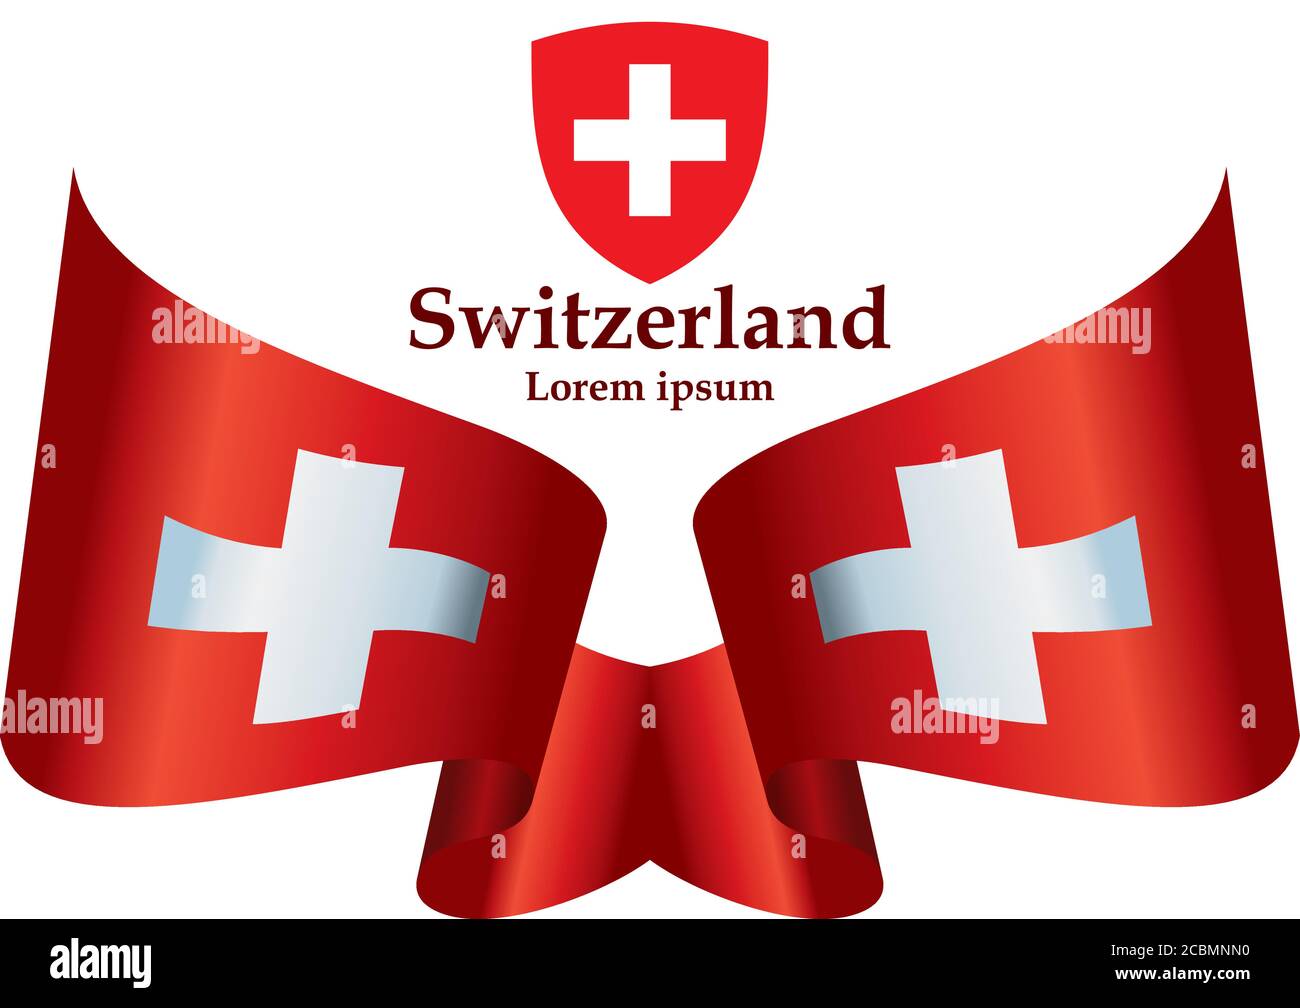 Flagge der Schweiz, Schweizerische Eidgenossenschaft. Vorlage für Award  Design, ein offizielles Dokument mit der Flagge der Schweiz  Stock-Vektorgrafik - Alamy